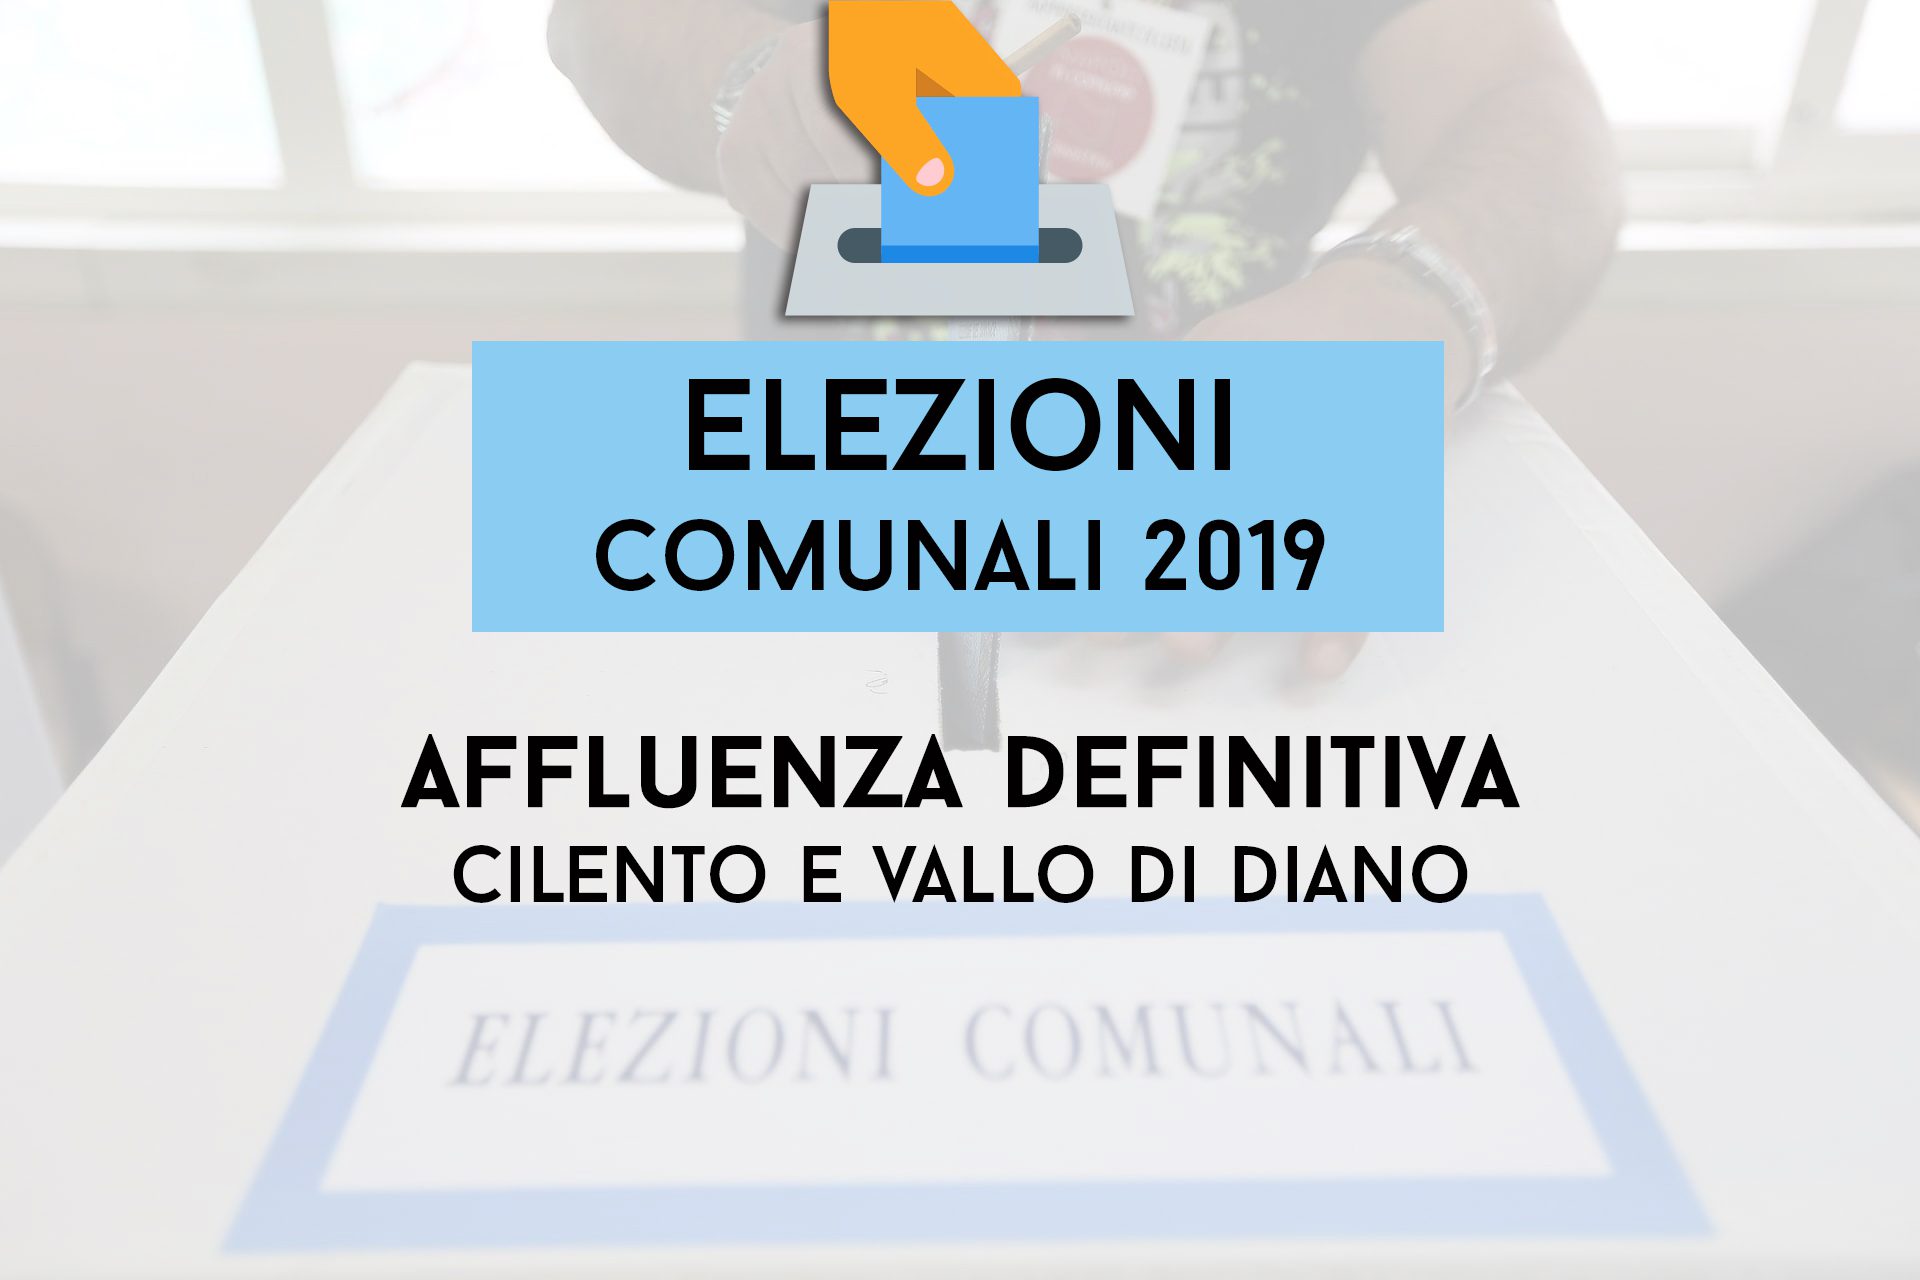 Comunali 2019, chiusi i seggi nel Cilento ma lo spoglio non inizia subito